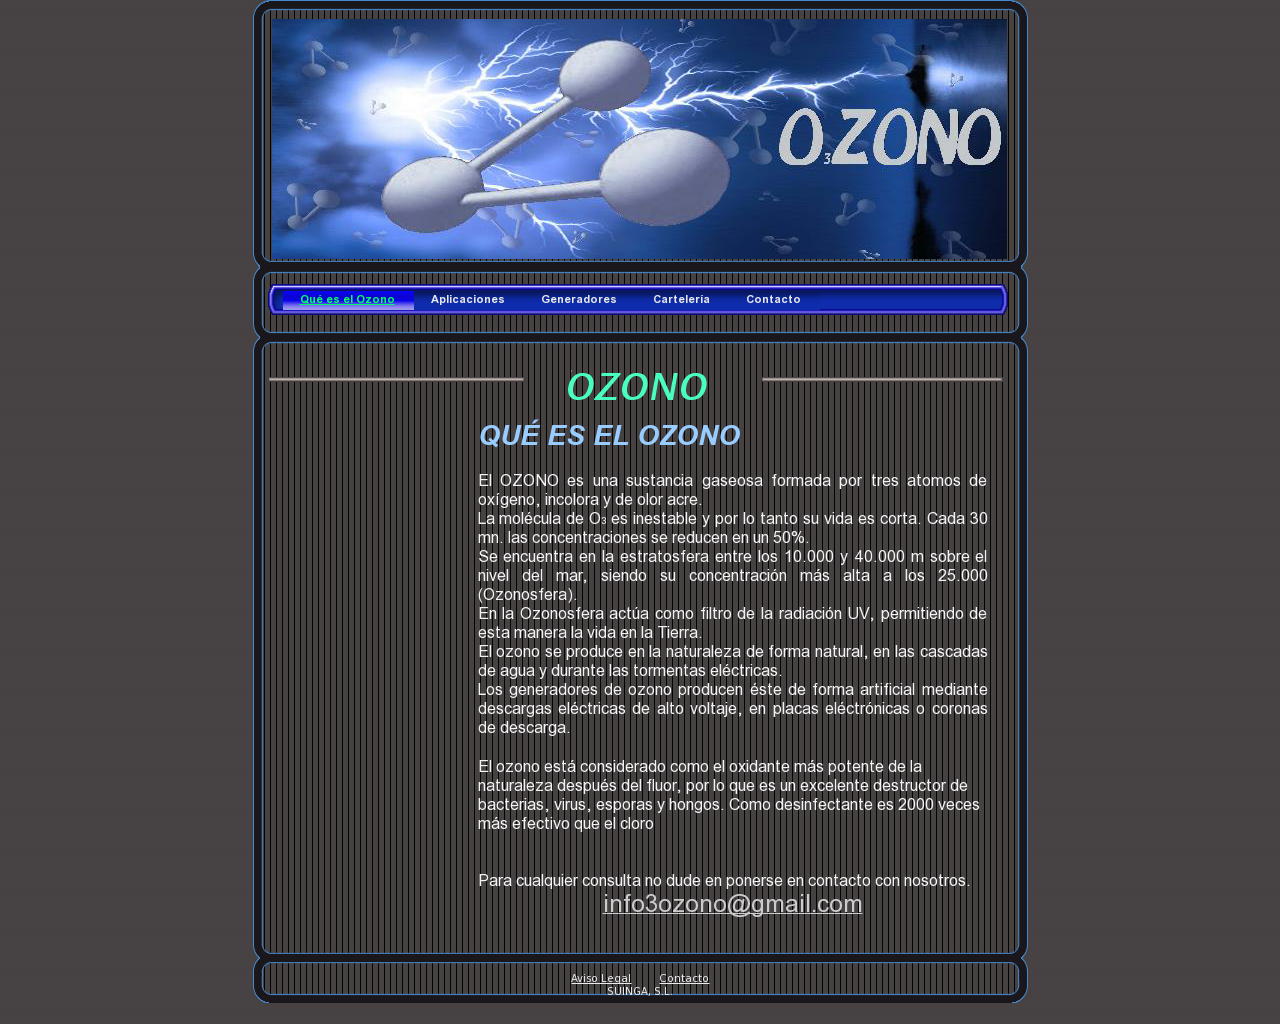 El sitio de la imagen o3ozono.es en 1280x1024